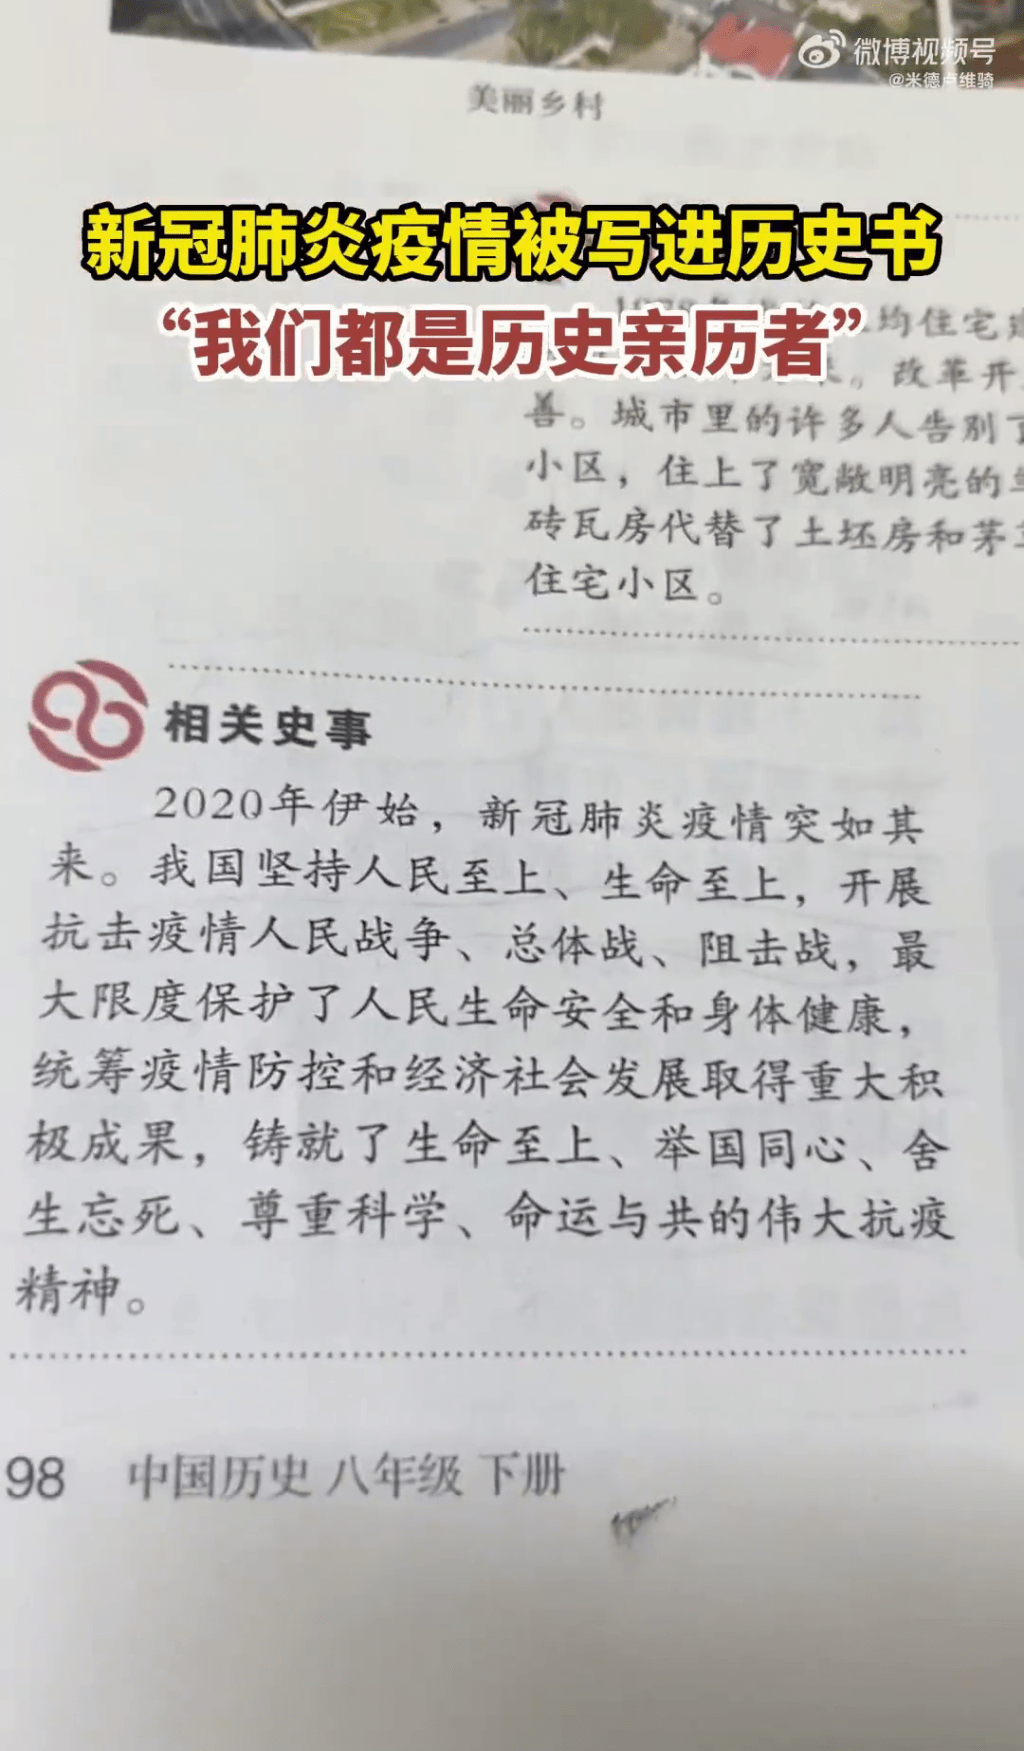 课本的第98页，出现一段「相关史事」中提及中国抗疫成就。